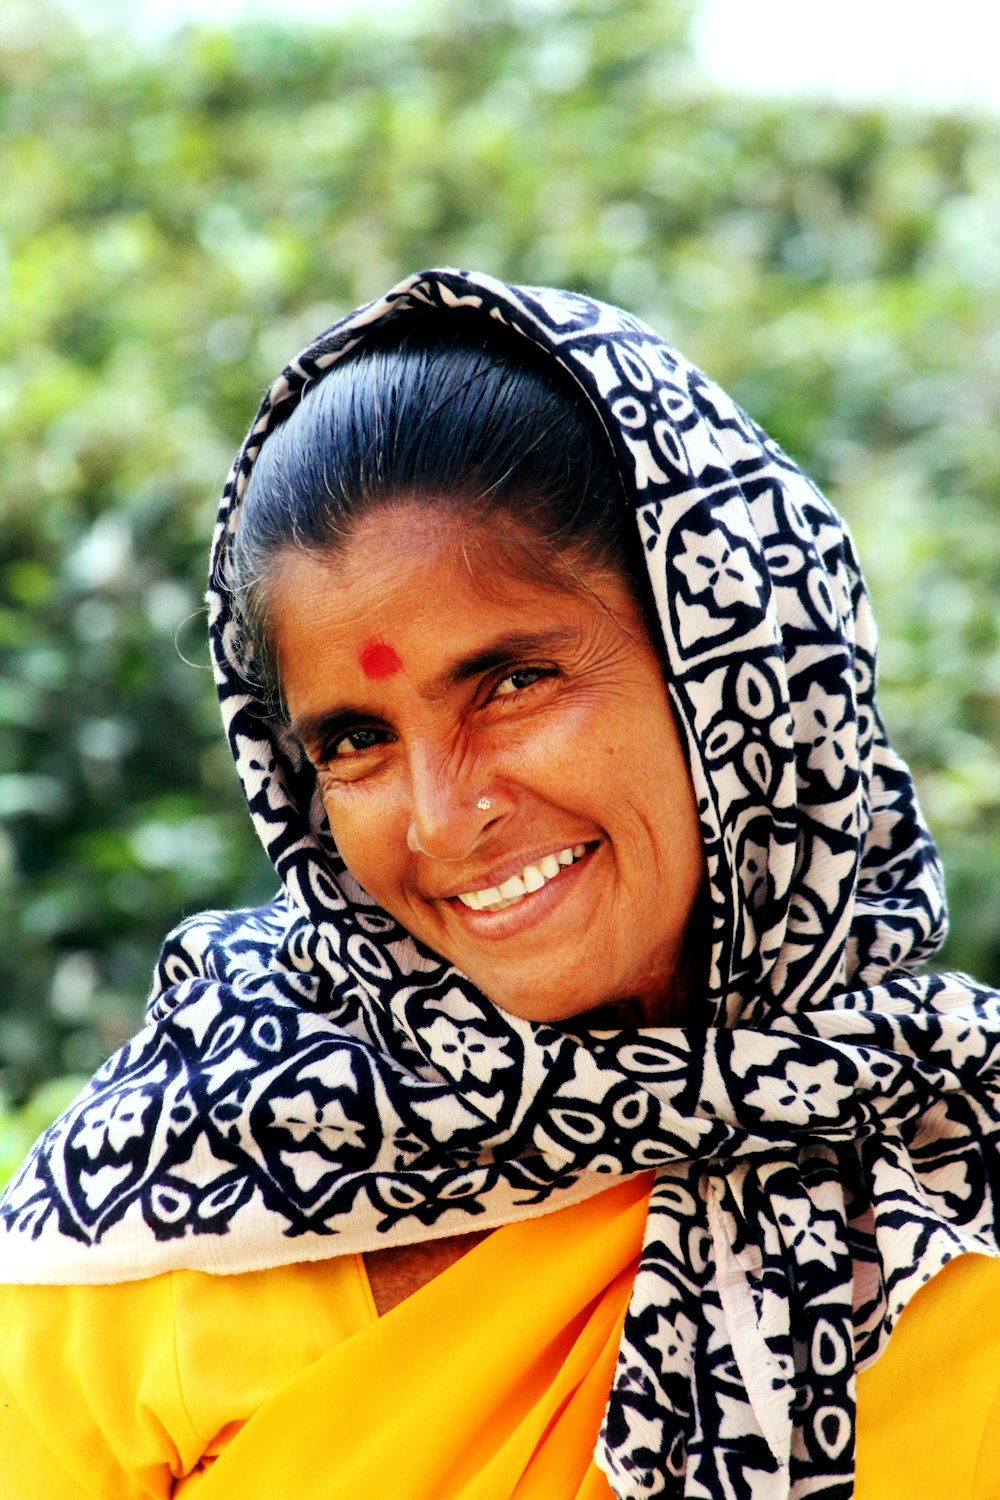 mujer con pañuelo floral blanco y negro mientras sonríe